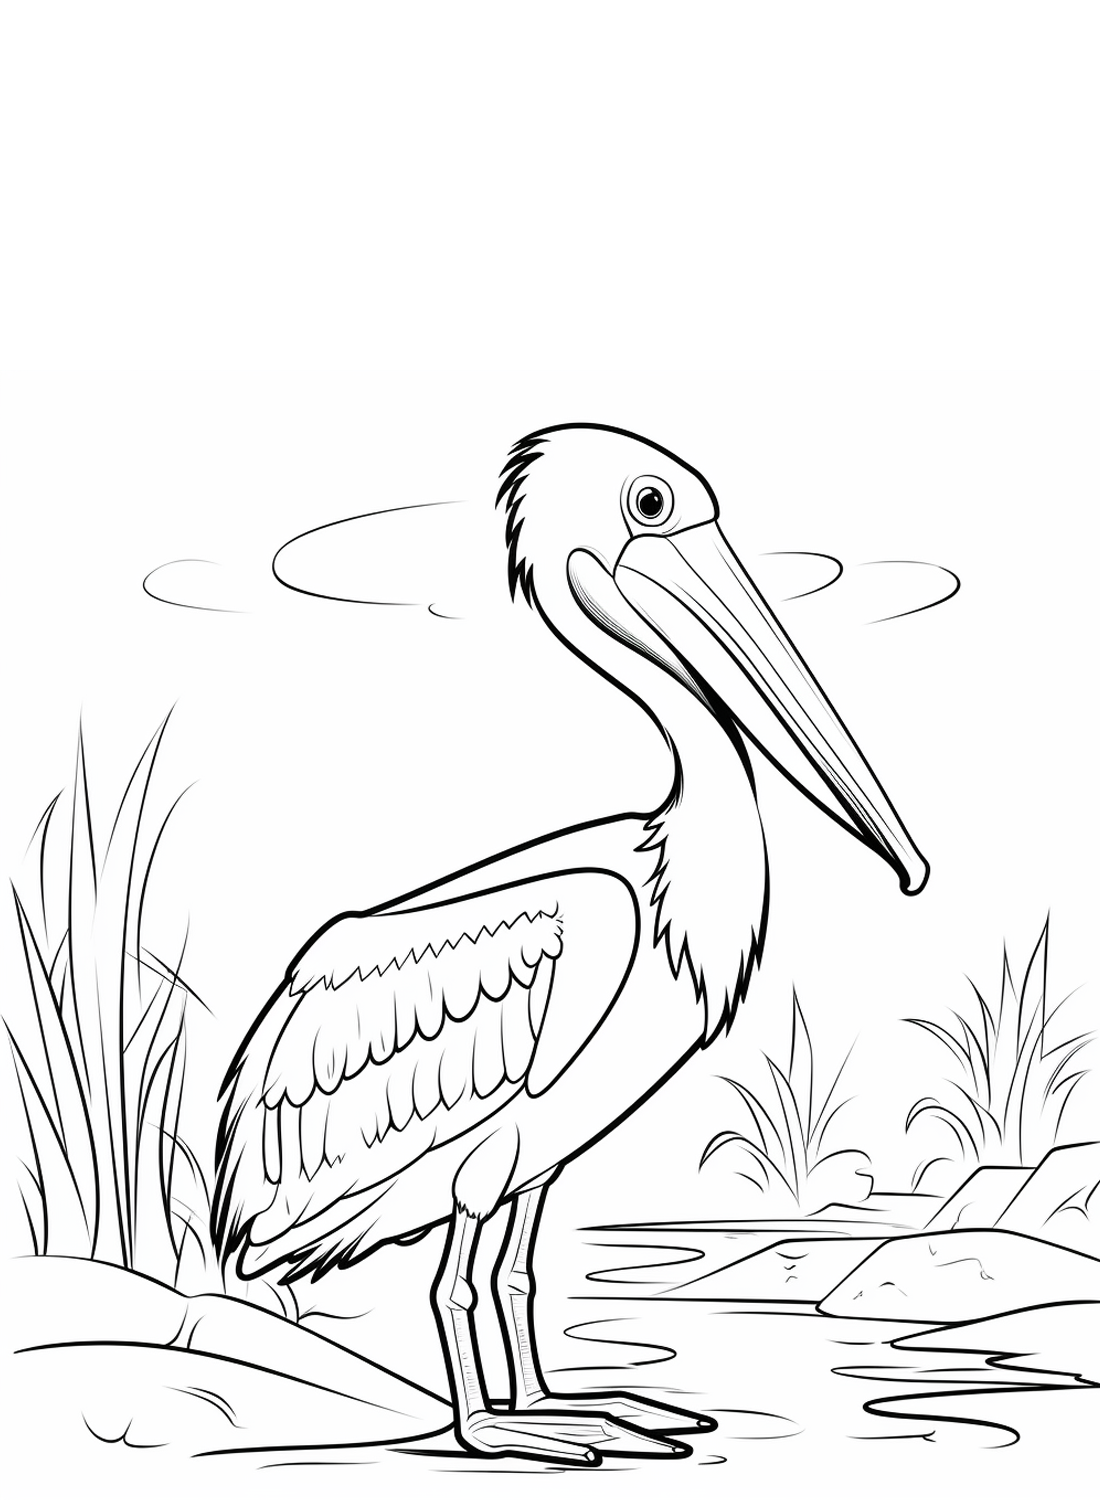 Um lindo pelicano da Pelican